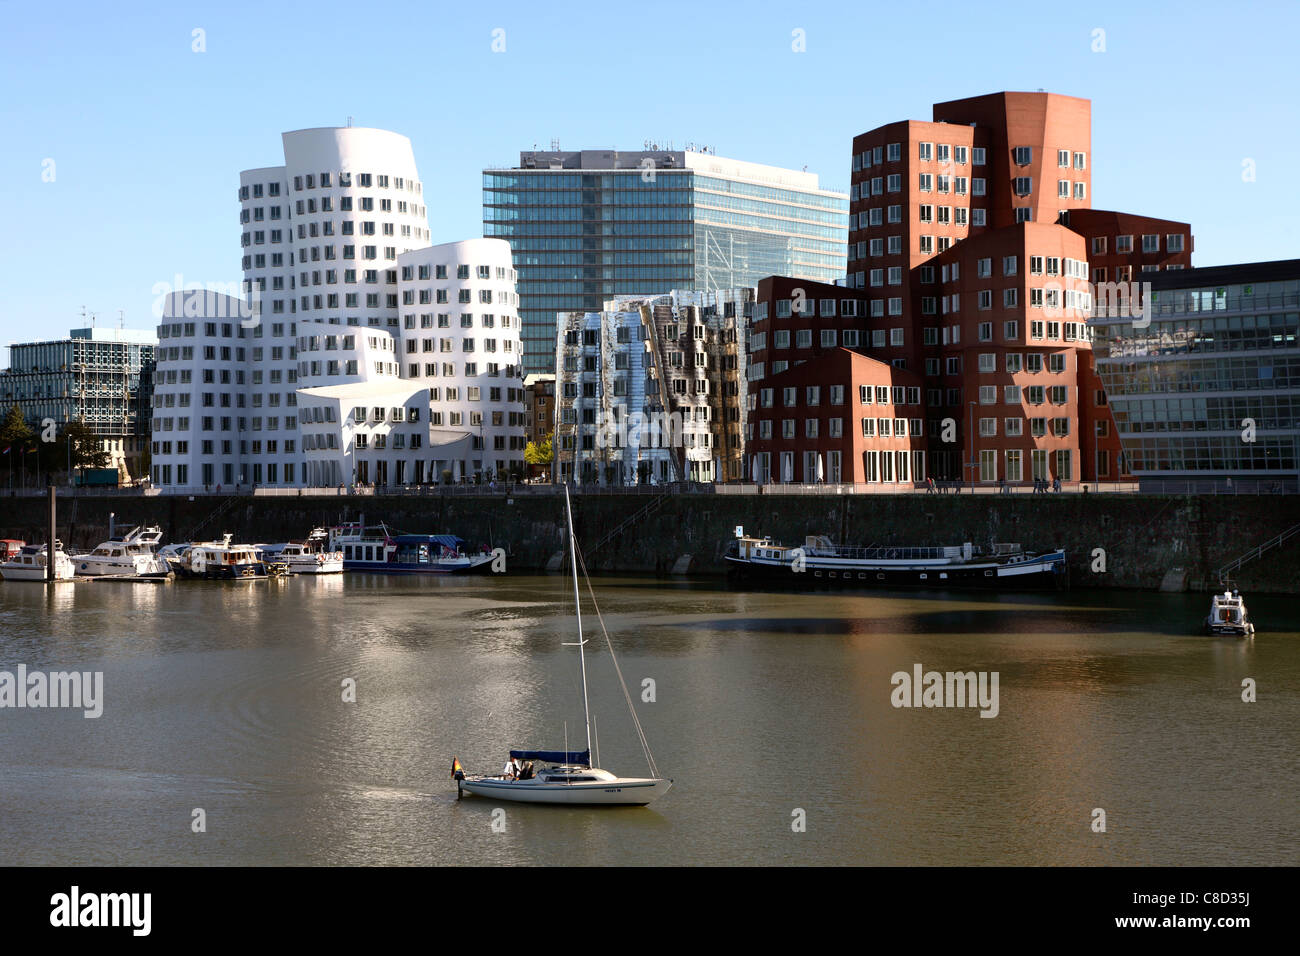 Stadt Düsseldorf, Deutschland. Stadtzentrum, Bürogebäude "Neuer Zollhof" von Architekt Gehry.  "Medienhafen" Bereich. Stockfoto